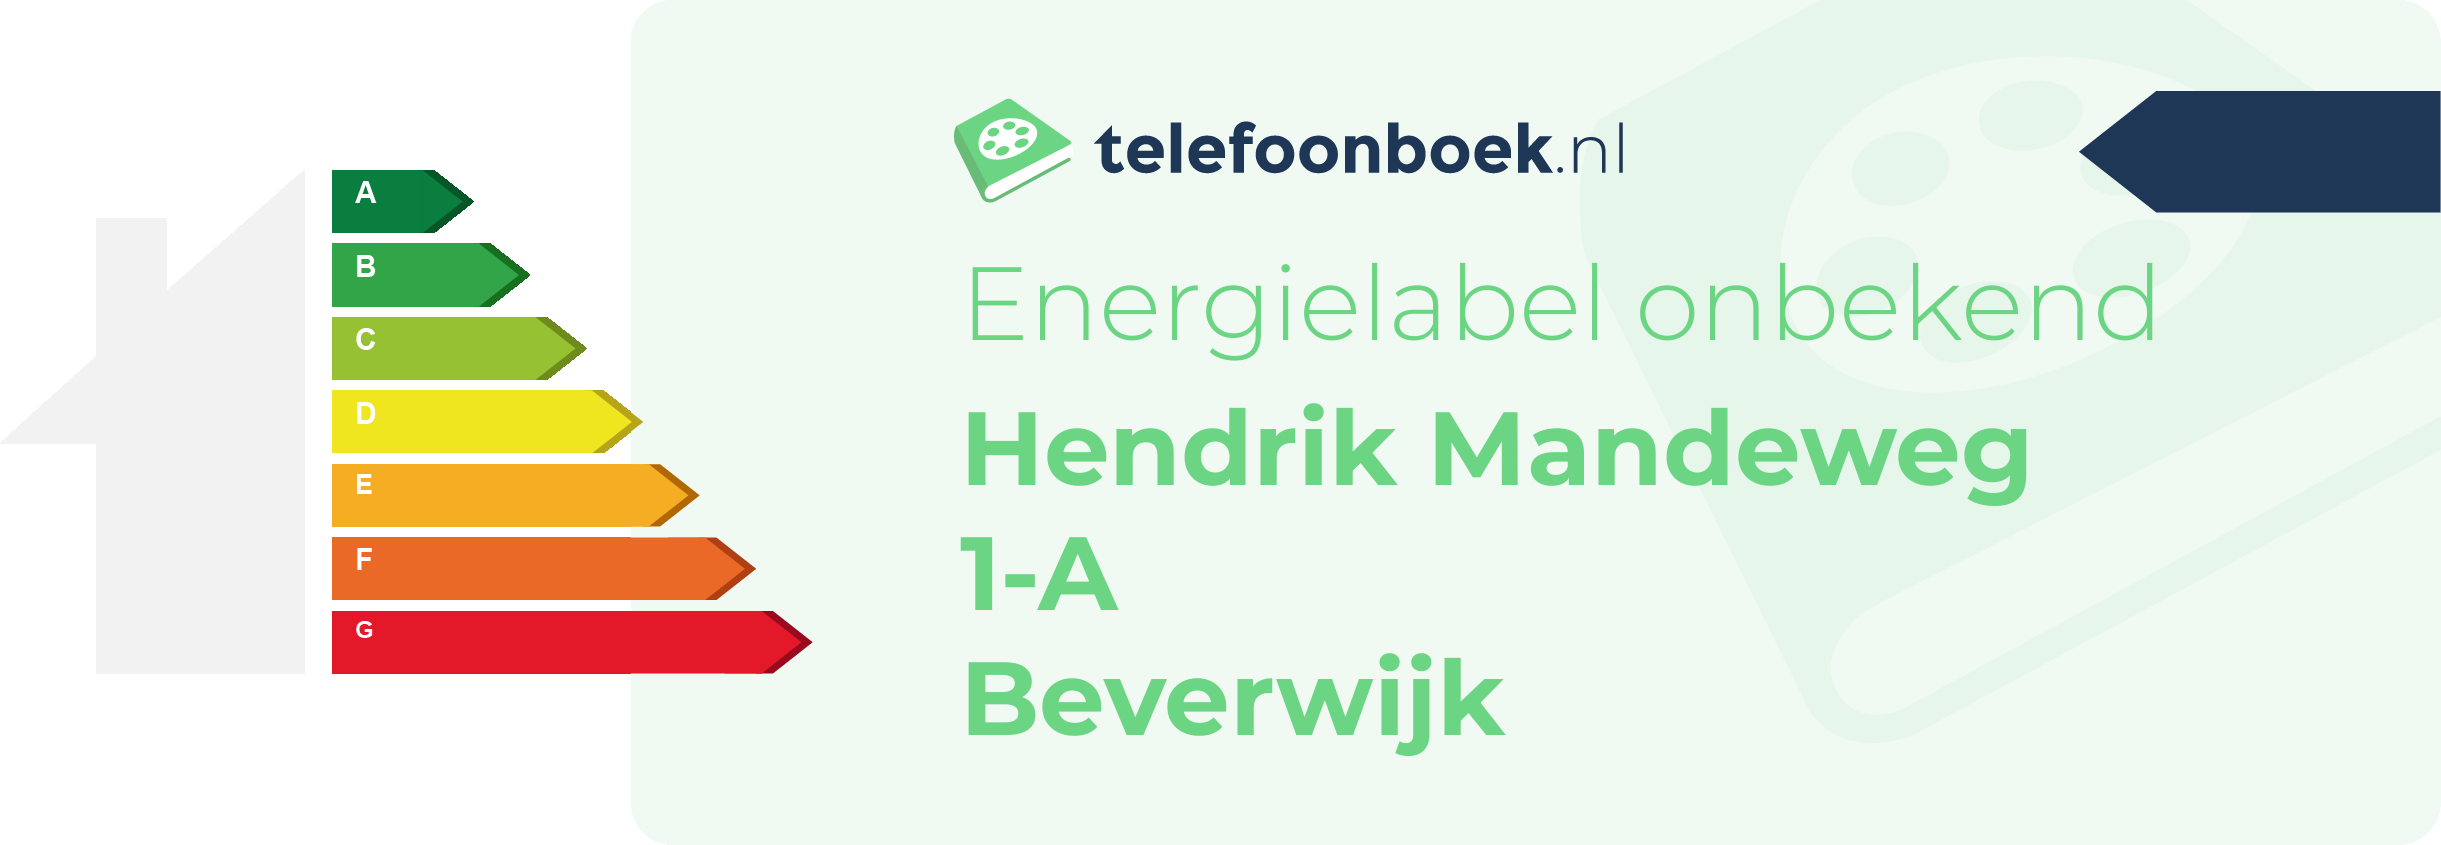 Energielabel Hendrik Mandeweg 1-A Beverwijk